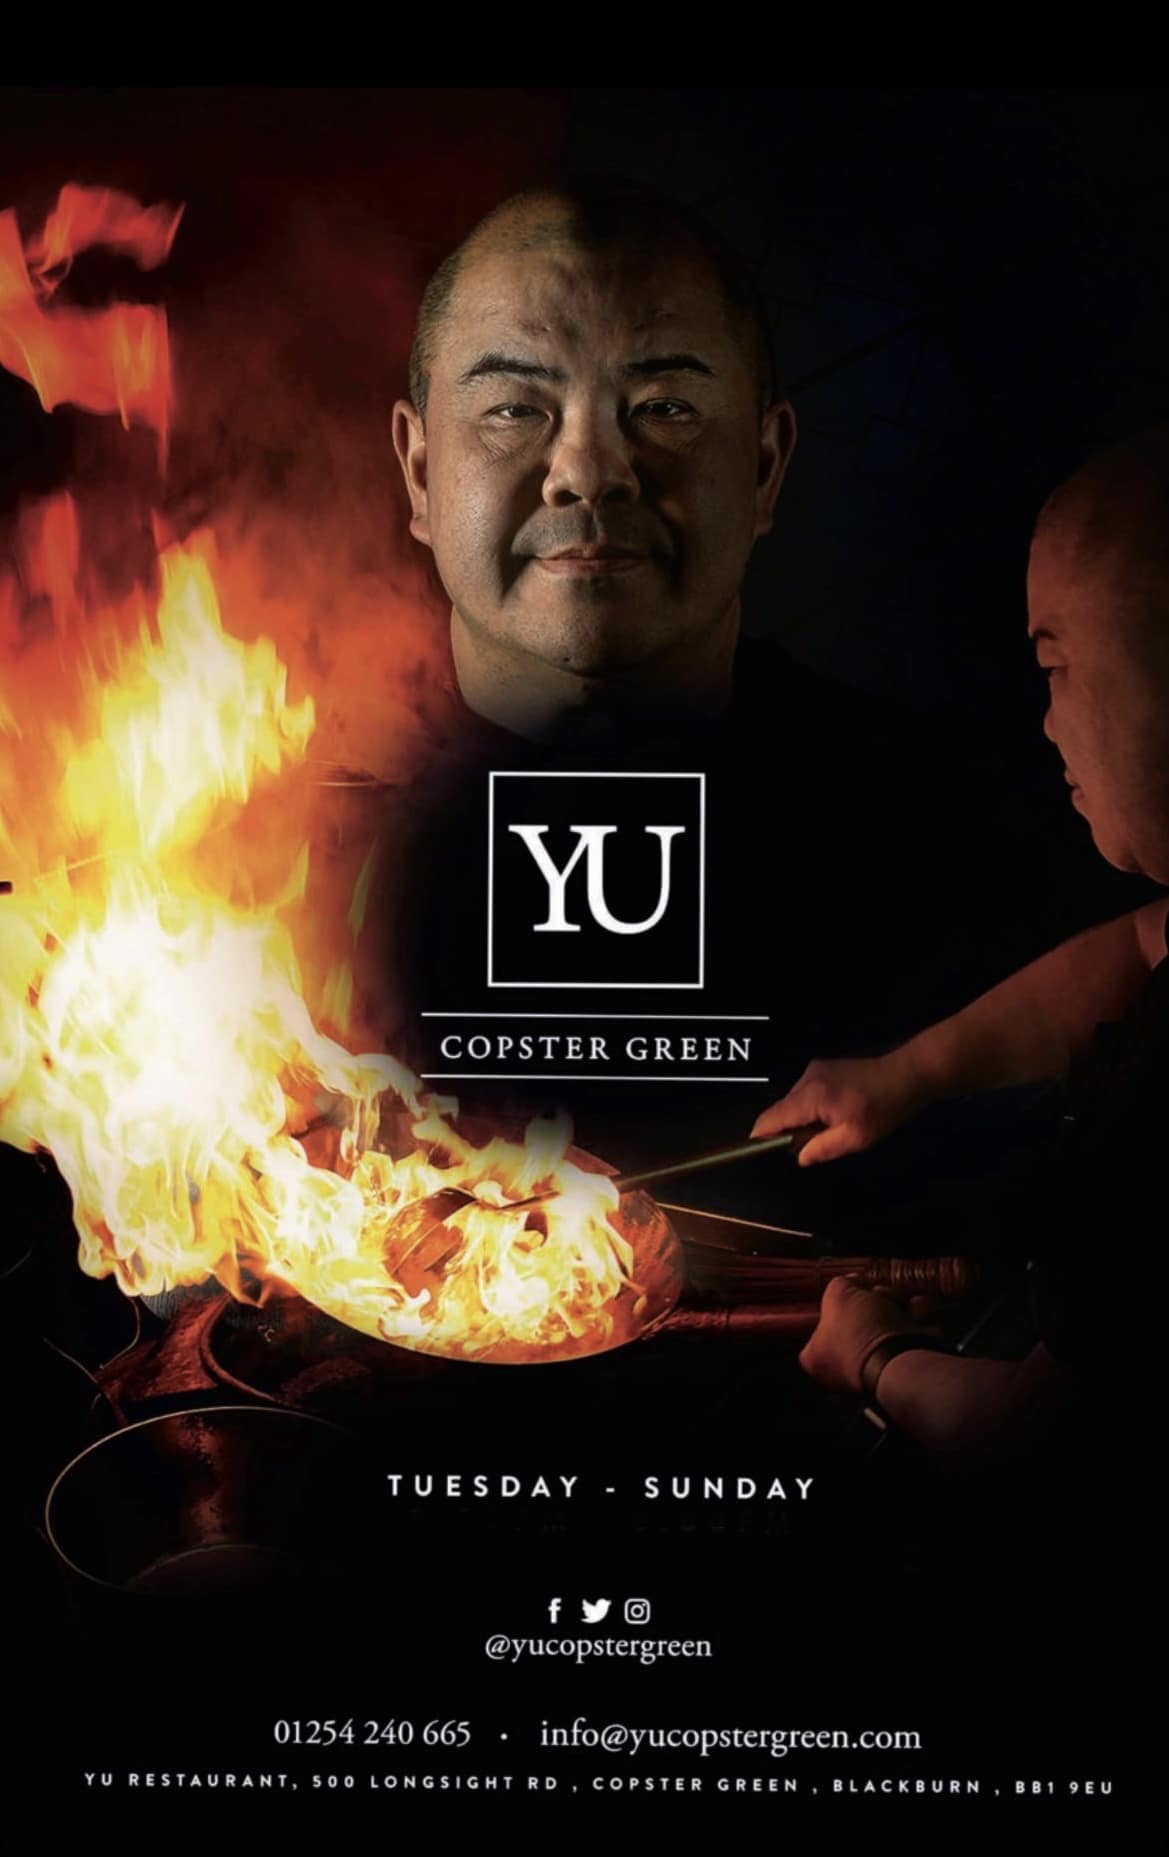 Yu Copster Green Restaurant & Bar